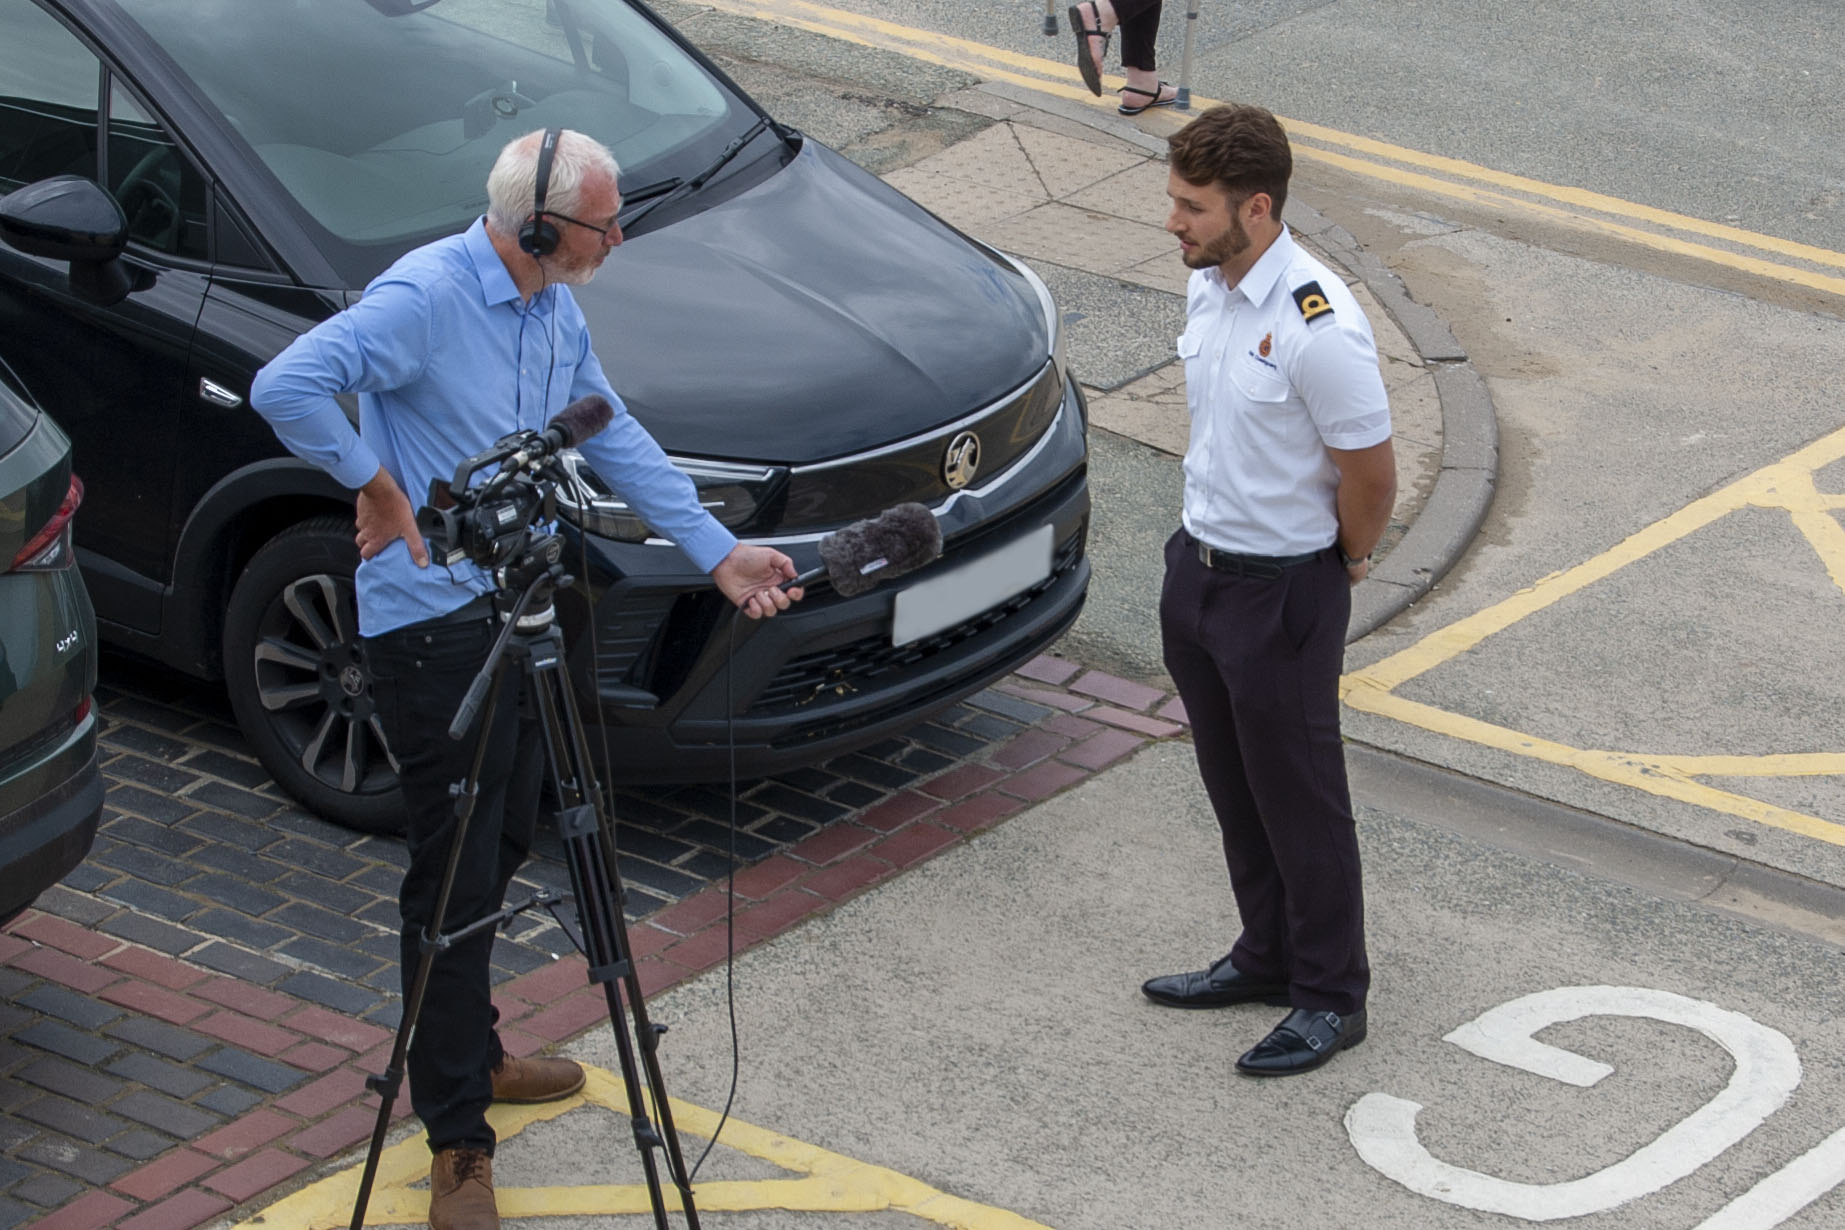 HM Coastguard Ben Miller being filmed during an interview